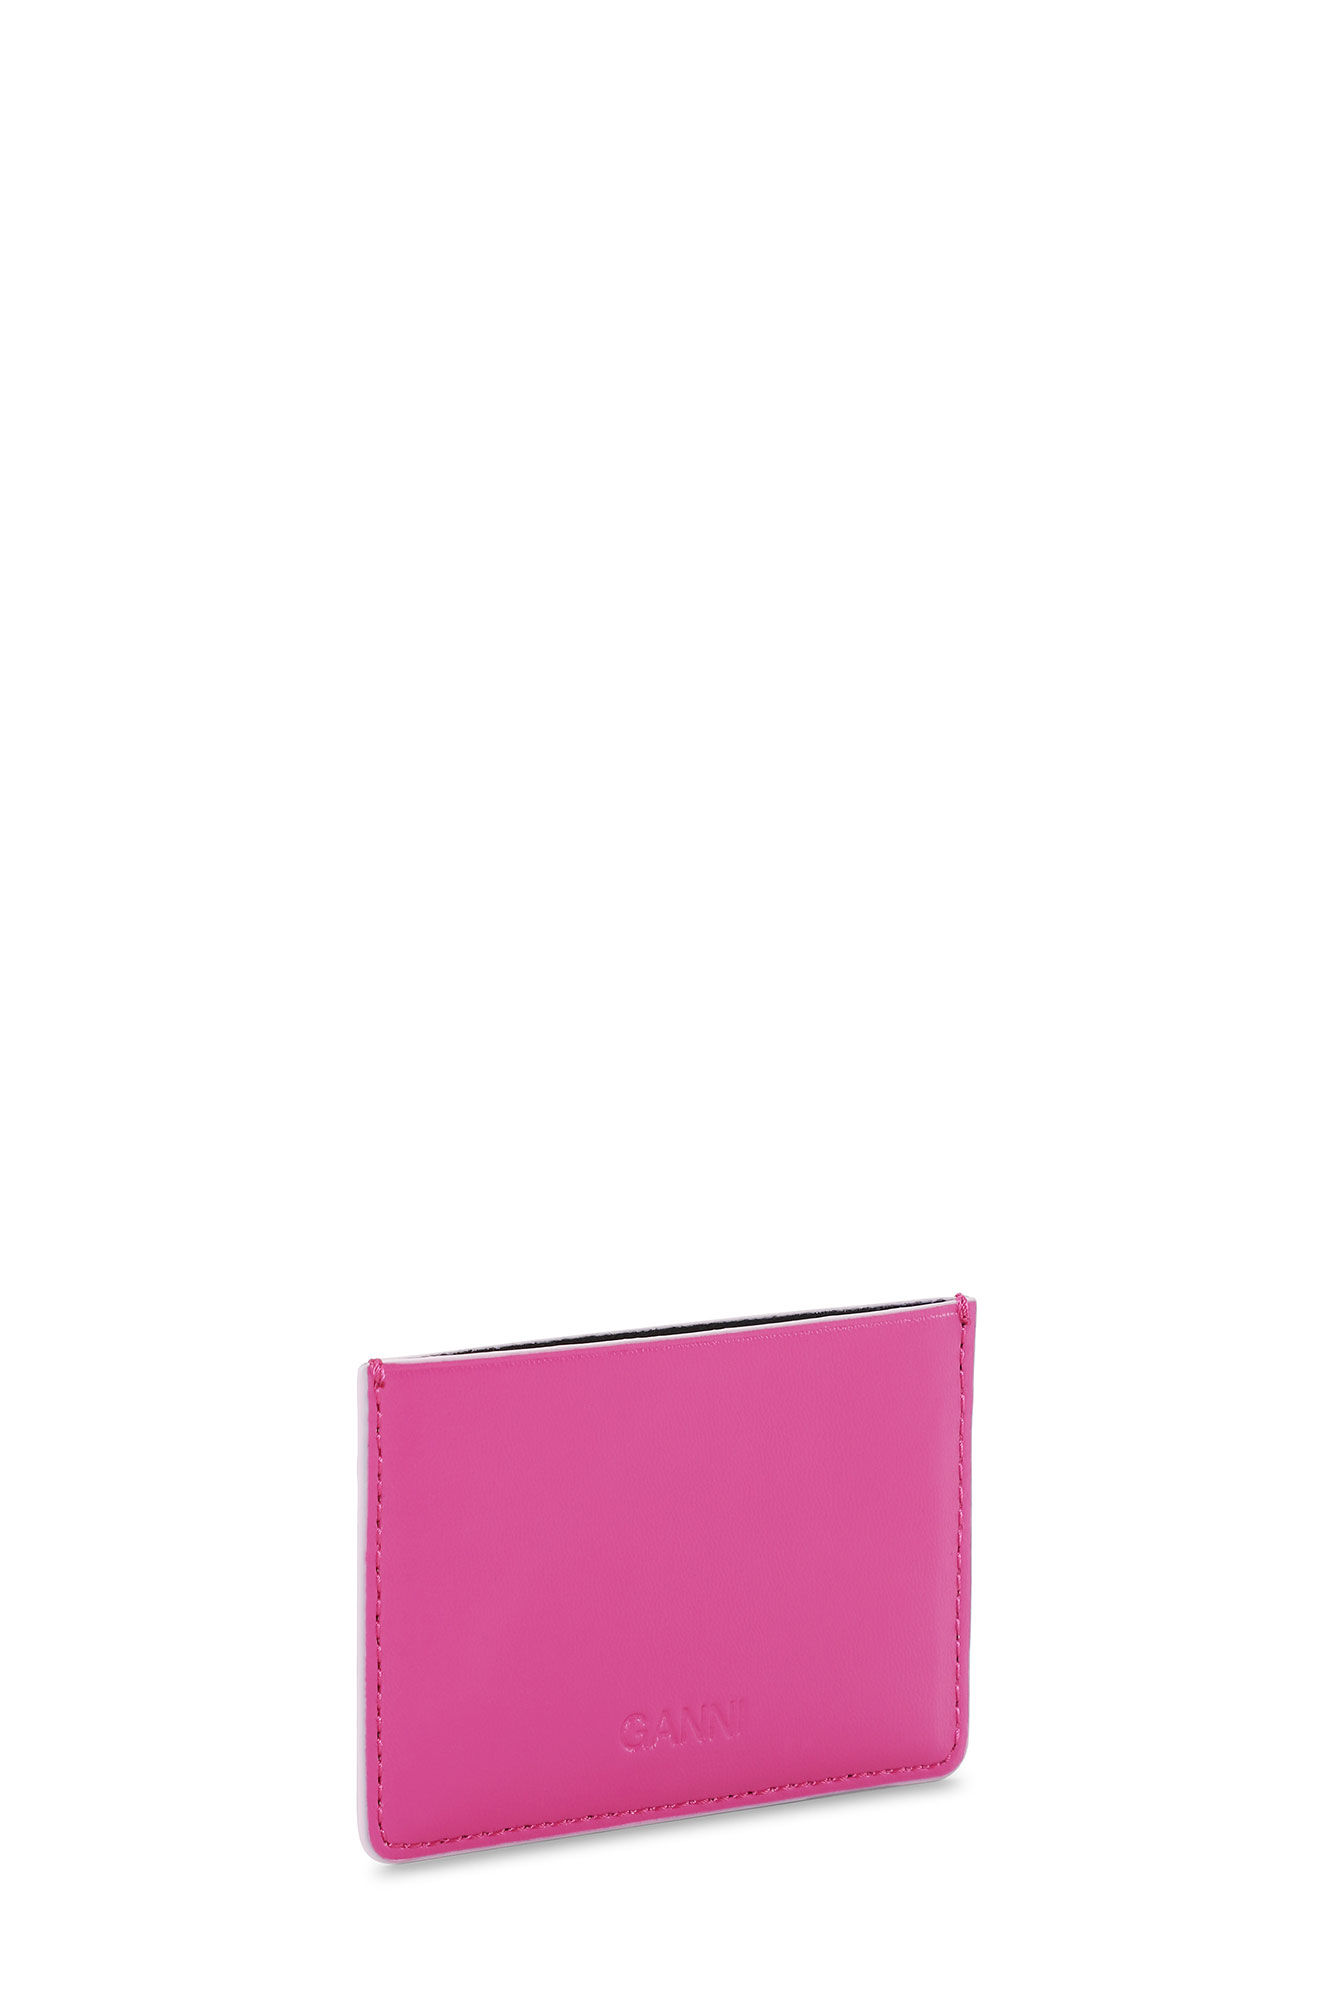 Pink GANNI Bou Card Holder | GANNI US